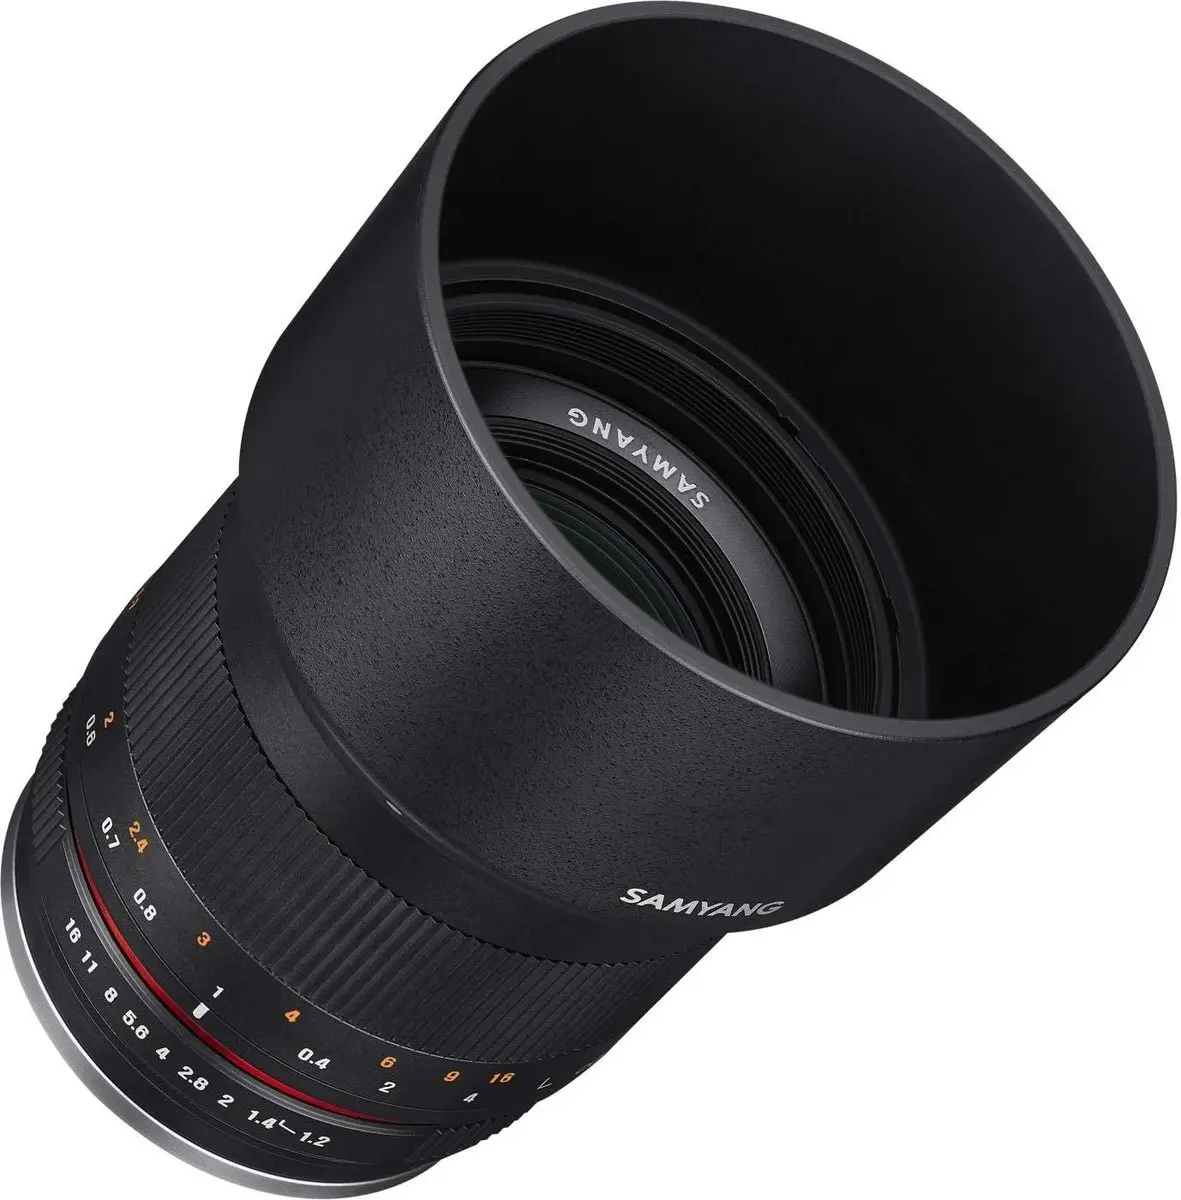 2. Samyang 50mm f/1.2 AS UMC CS (Canon M) Lens